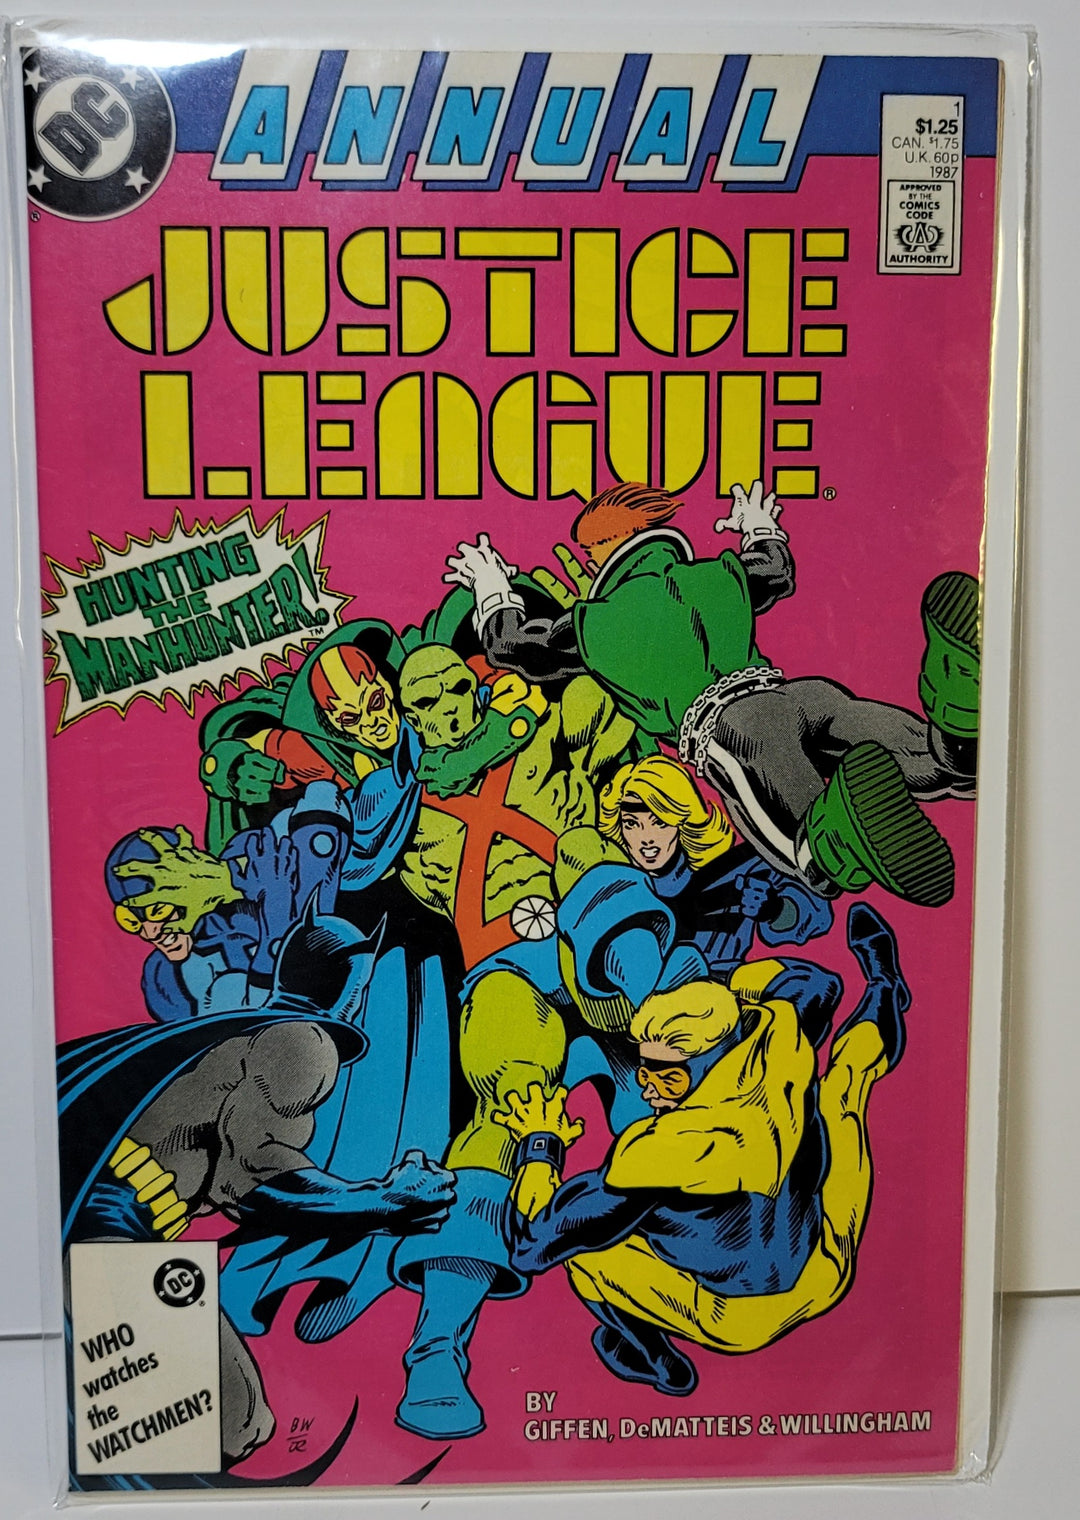 正义联盟年度 #1 1987 助推器金币 - 火星猎人 - DC 漫画